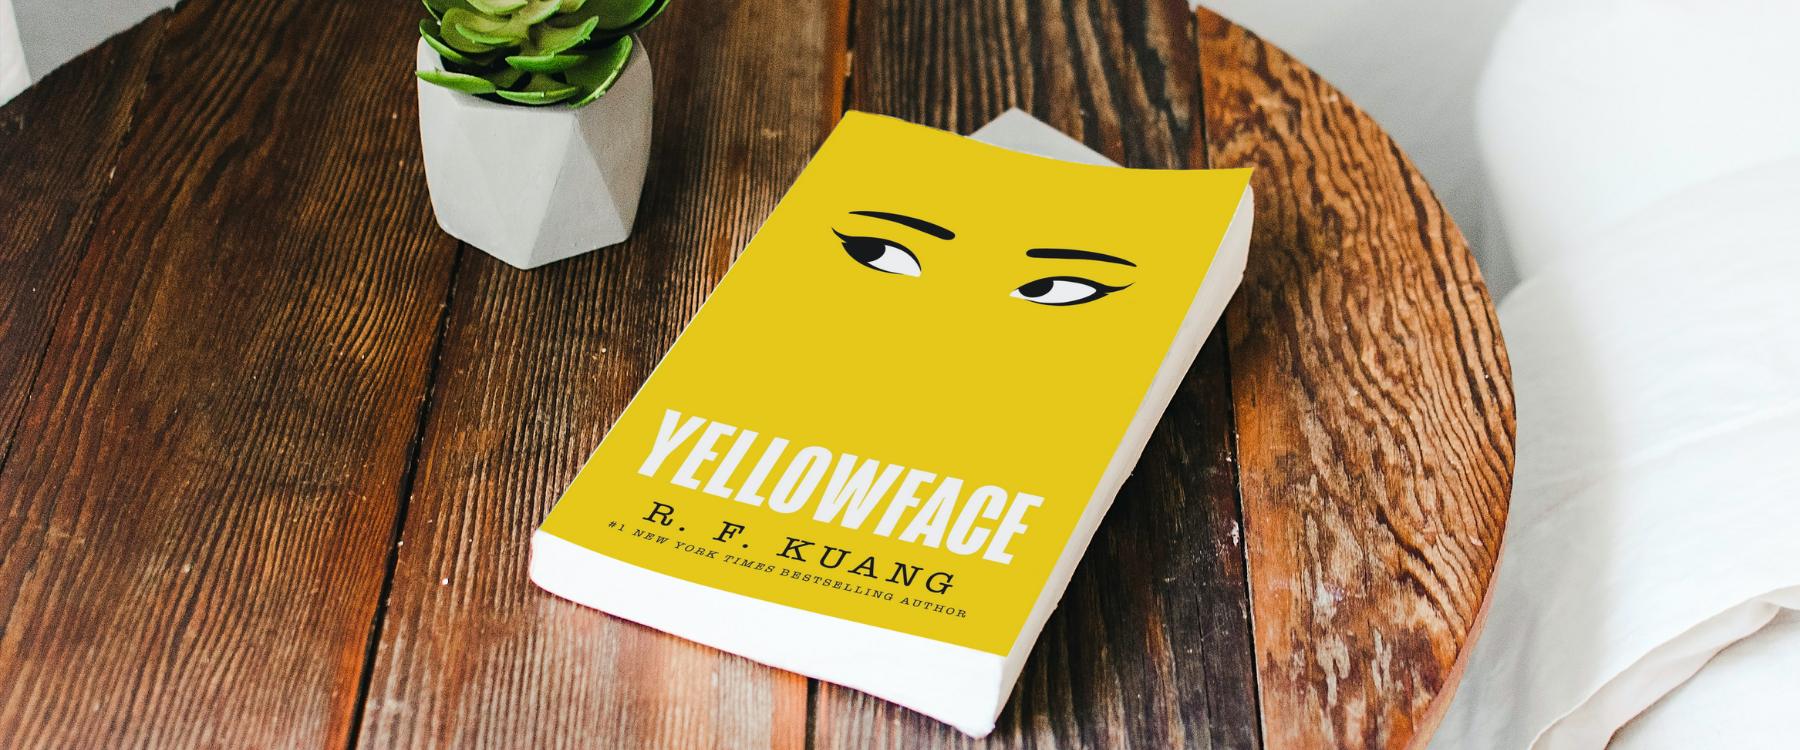 Recension: "Yellowface" R. F. Kuang